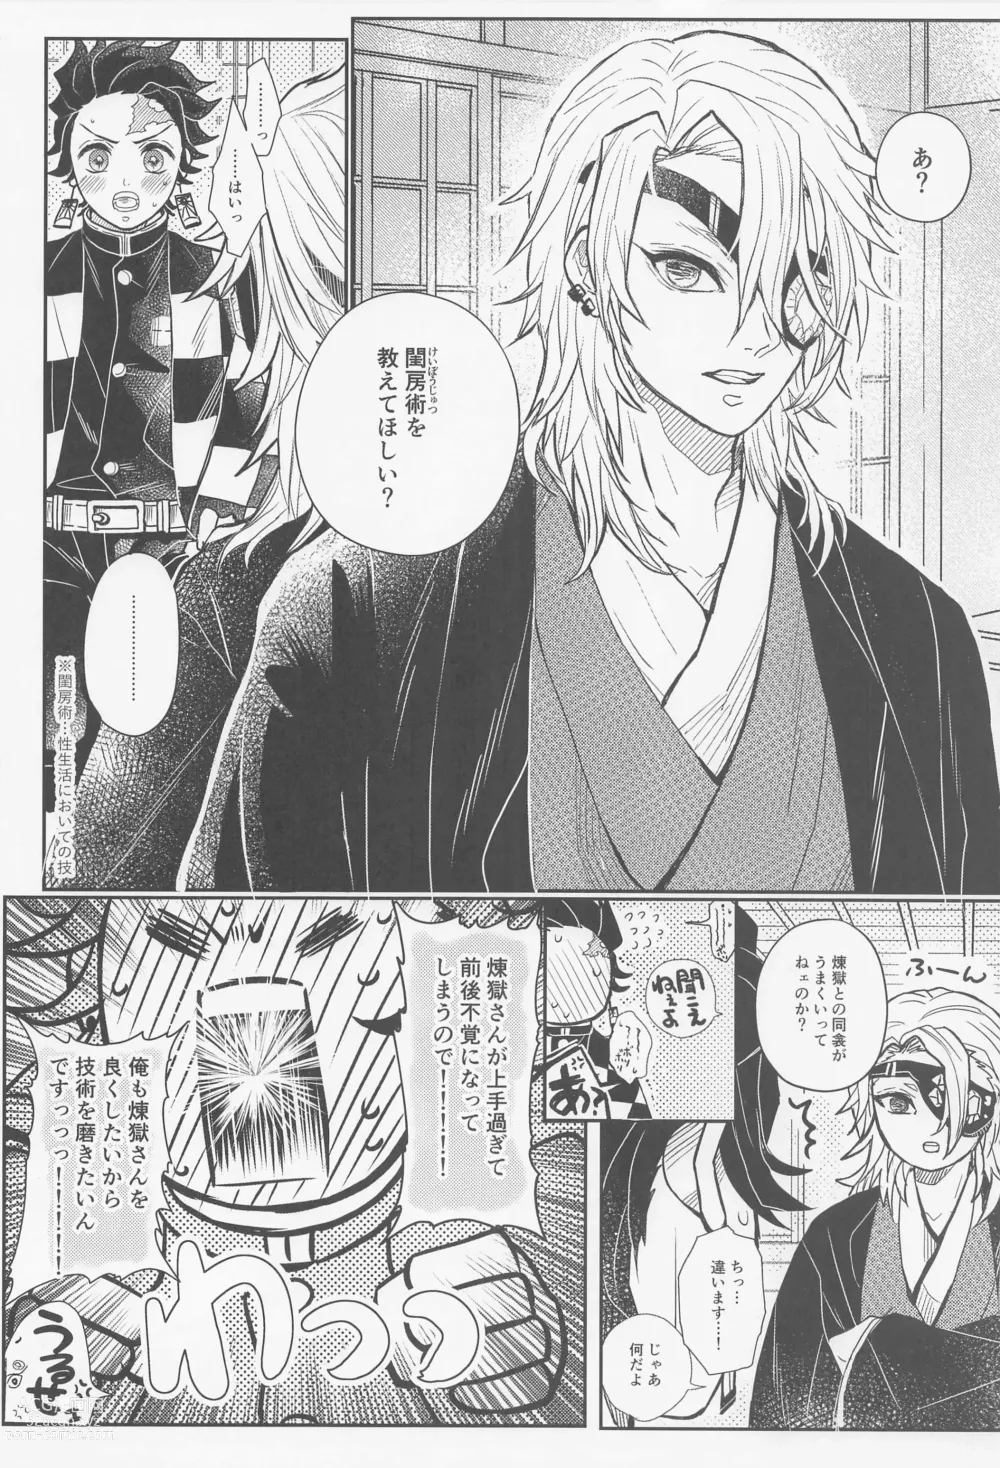 Page 3 of doujinshi Gokurakujoudo